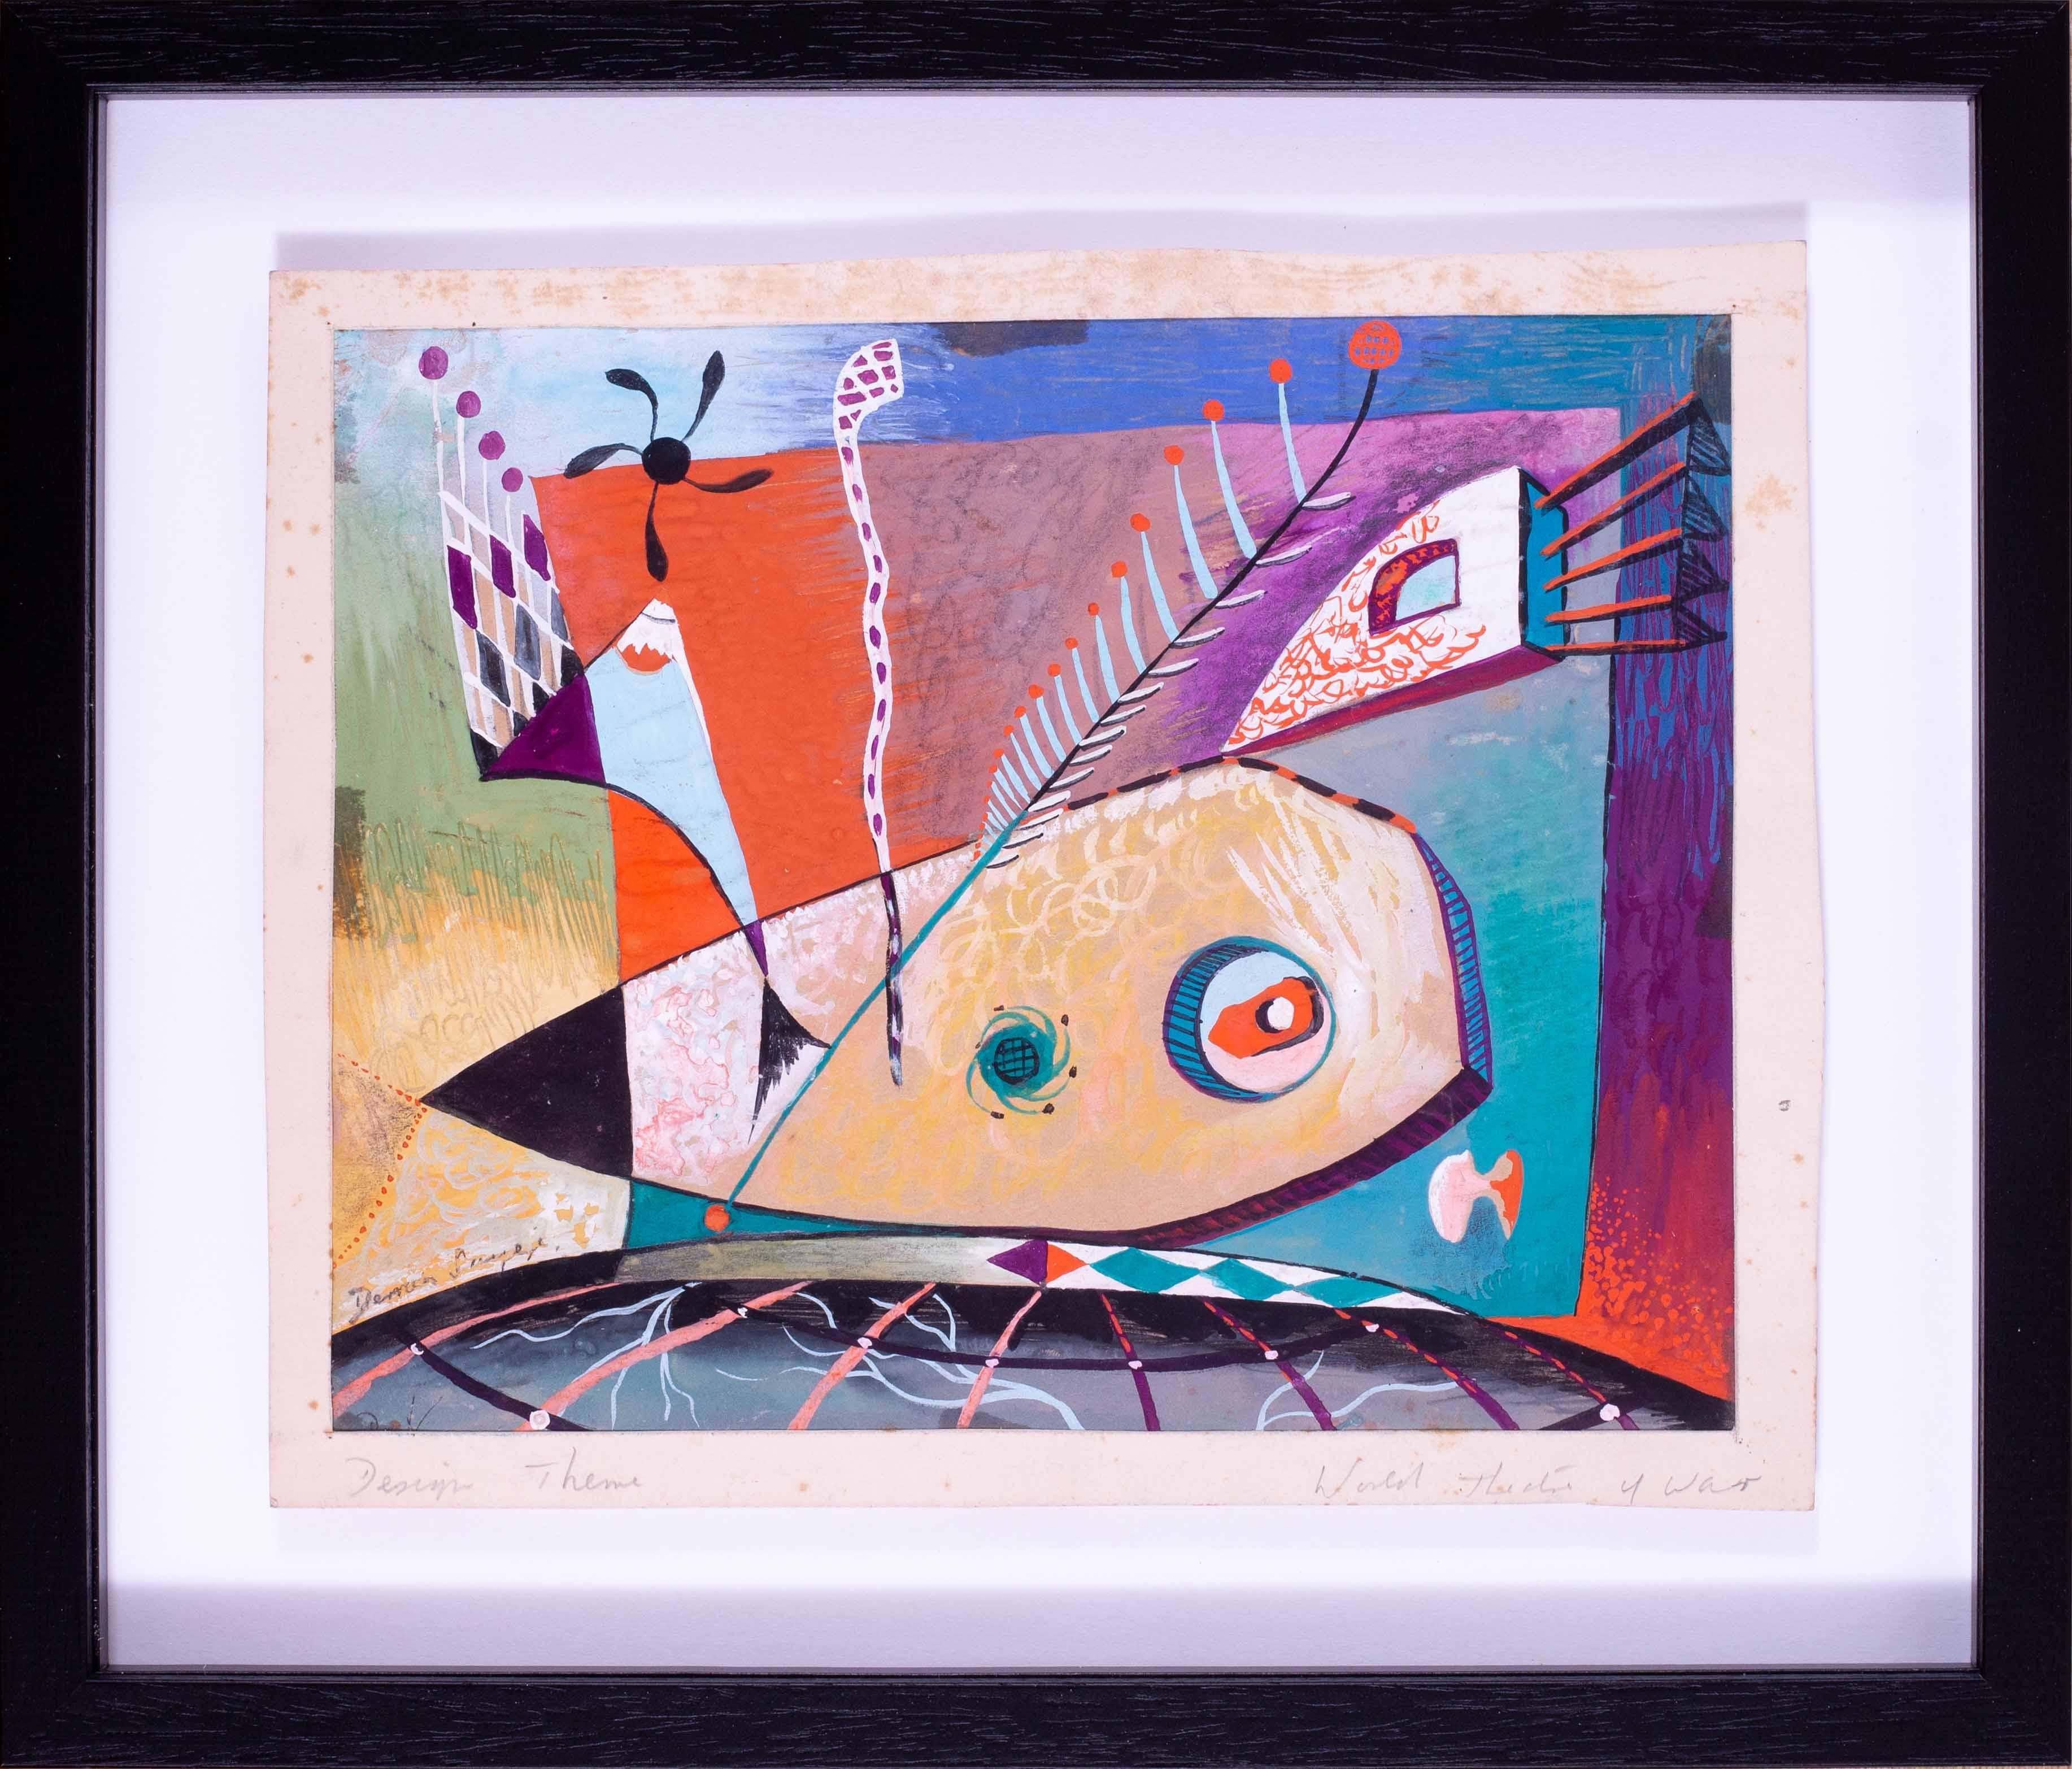 Derrick Latimer Sayer (Brite, 1917 - 1992)
Weltkriegsschauplatz
Signiert 'Derrick Sayer' (unten links)
Gouache
7 x 9 Zoll (17,8 x 22,8 cm)

Derrick Latimer Sayer (1912-1992) wurde als neoromantischer und Pop-Art-Künstler beschrieben, dessen Karriere